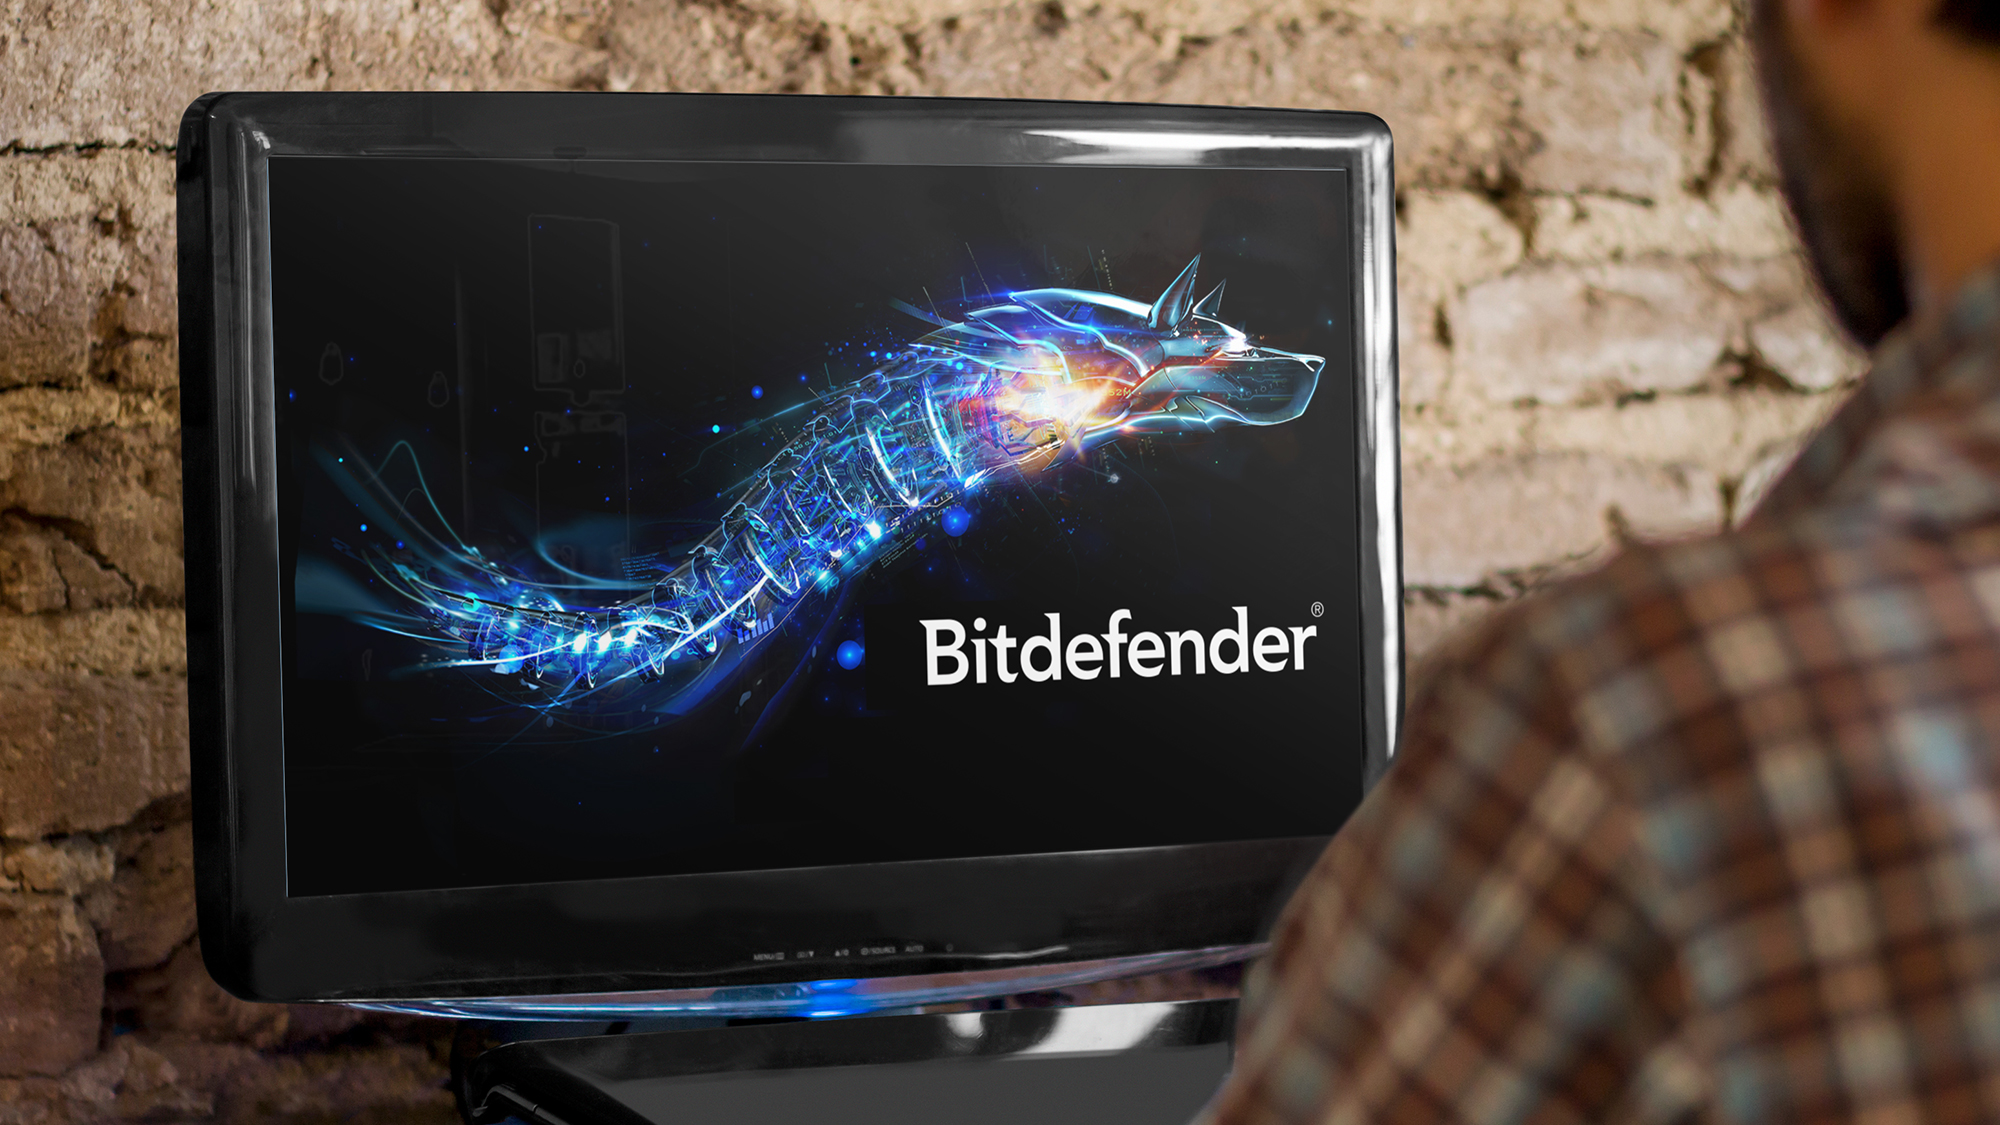 تصویر لوگوی آنتی ویروس Bitdefender بر روی نمایشگر یک سیستم